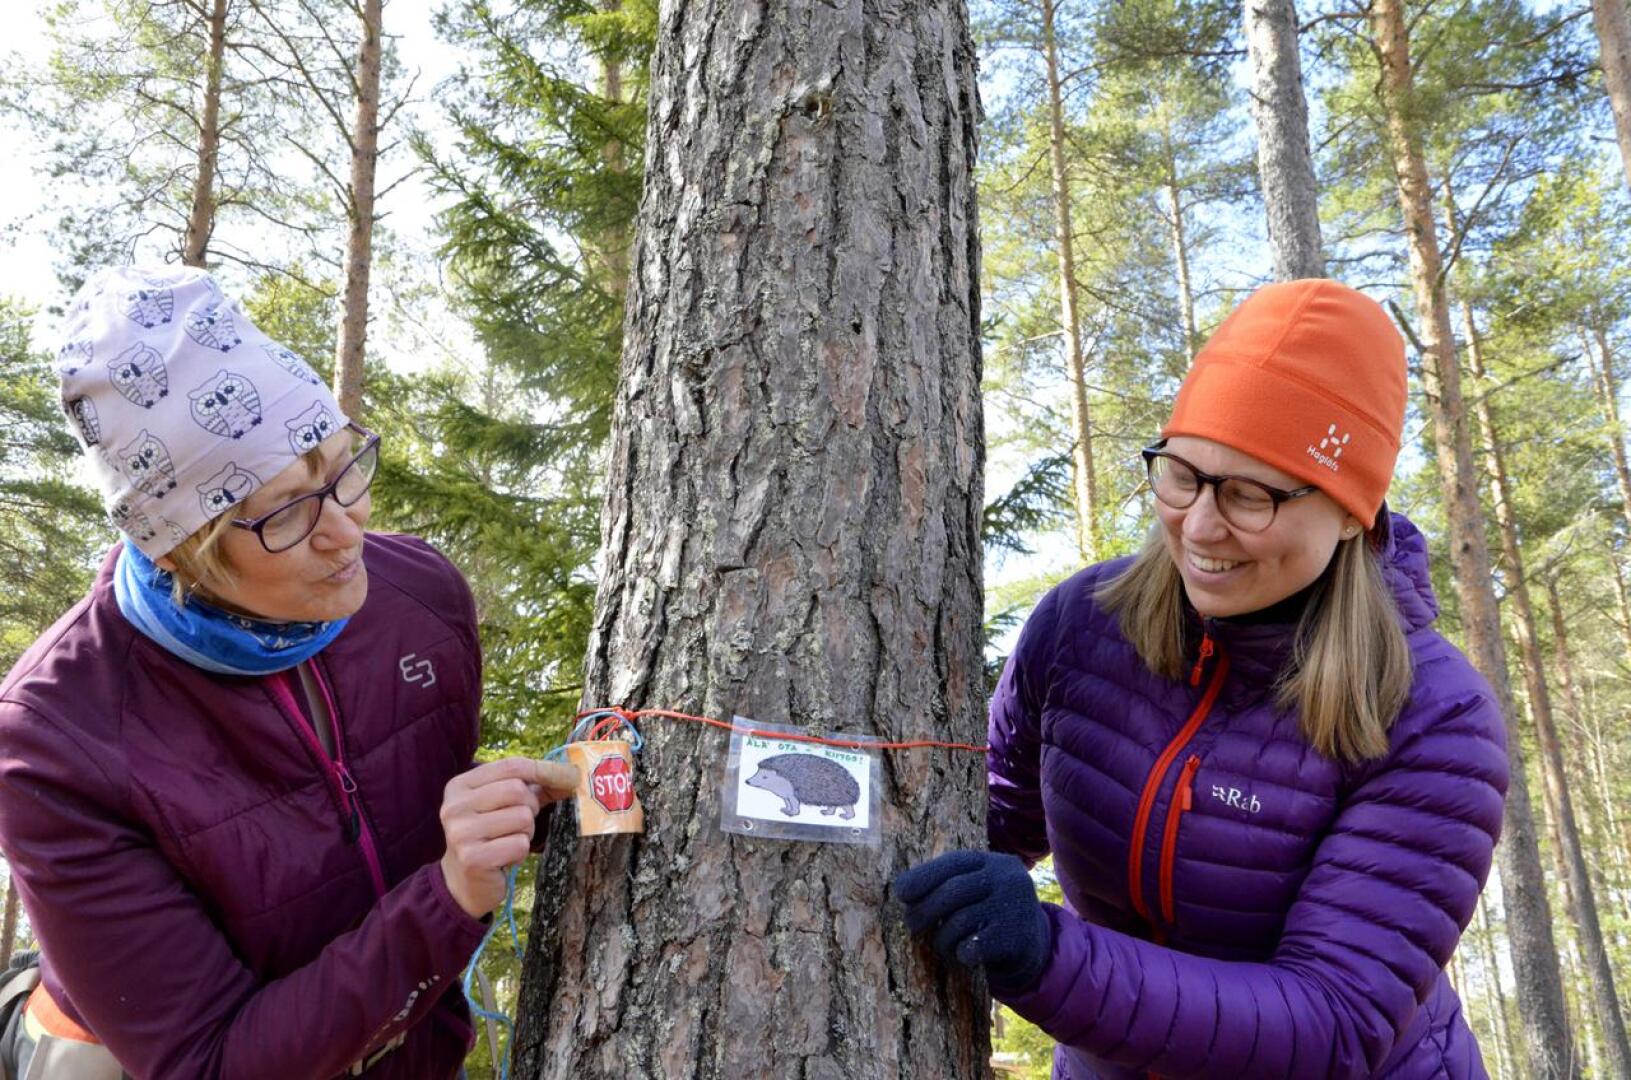 Varhaiskasvatuskerhojen lastenhoitaja Arja Nivala ja opettaja Jaana Kokkonen palauttivat pikaisesti eläinaiheiset opastelaput metsään kerhoa varten. He ehtivät poikkeusolojen alkaessa kerätä kerhokimpsut metsästä, kun olettivat, että kerhotoiminta jatkuu vasta syksyllä.